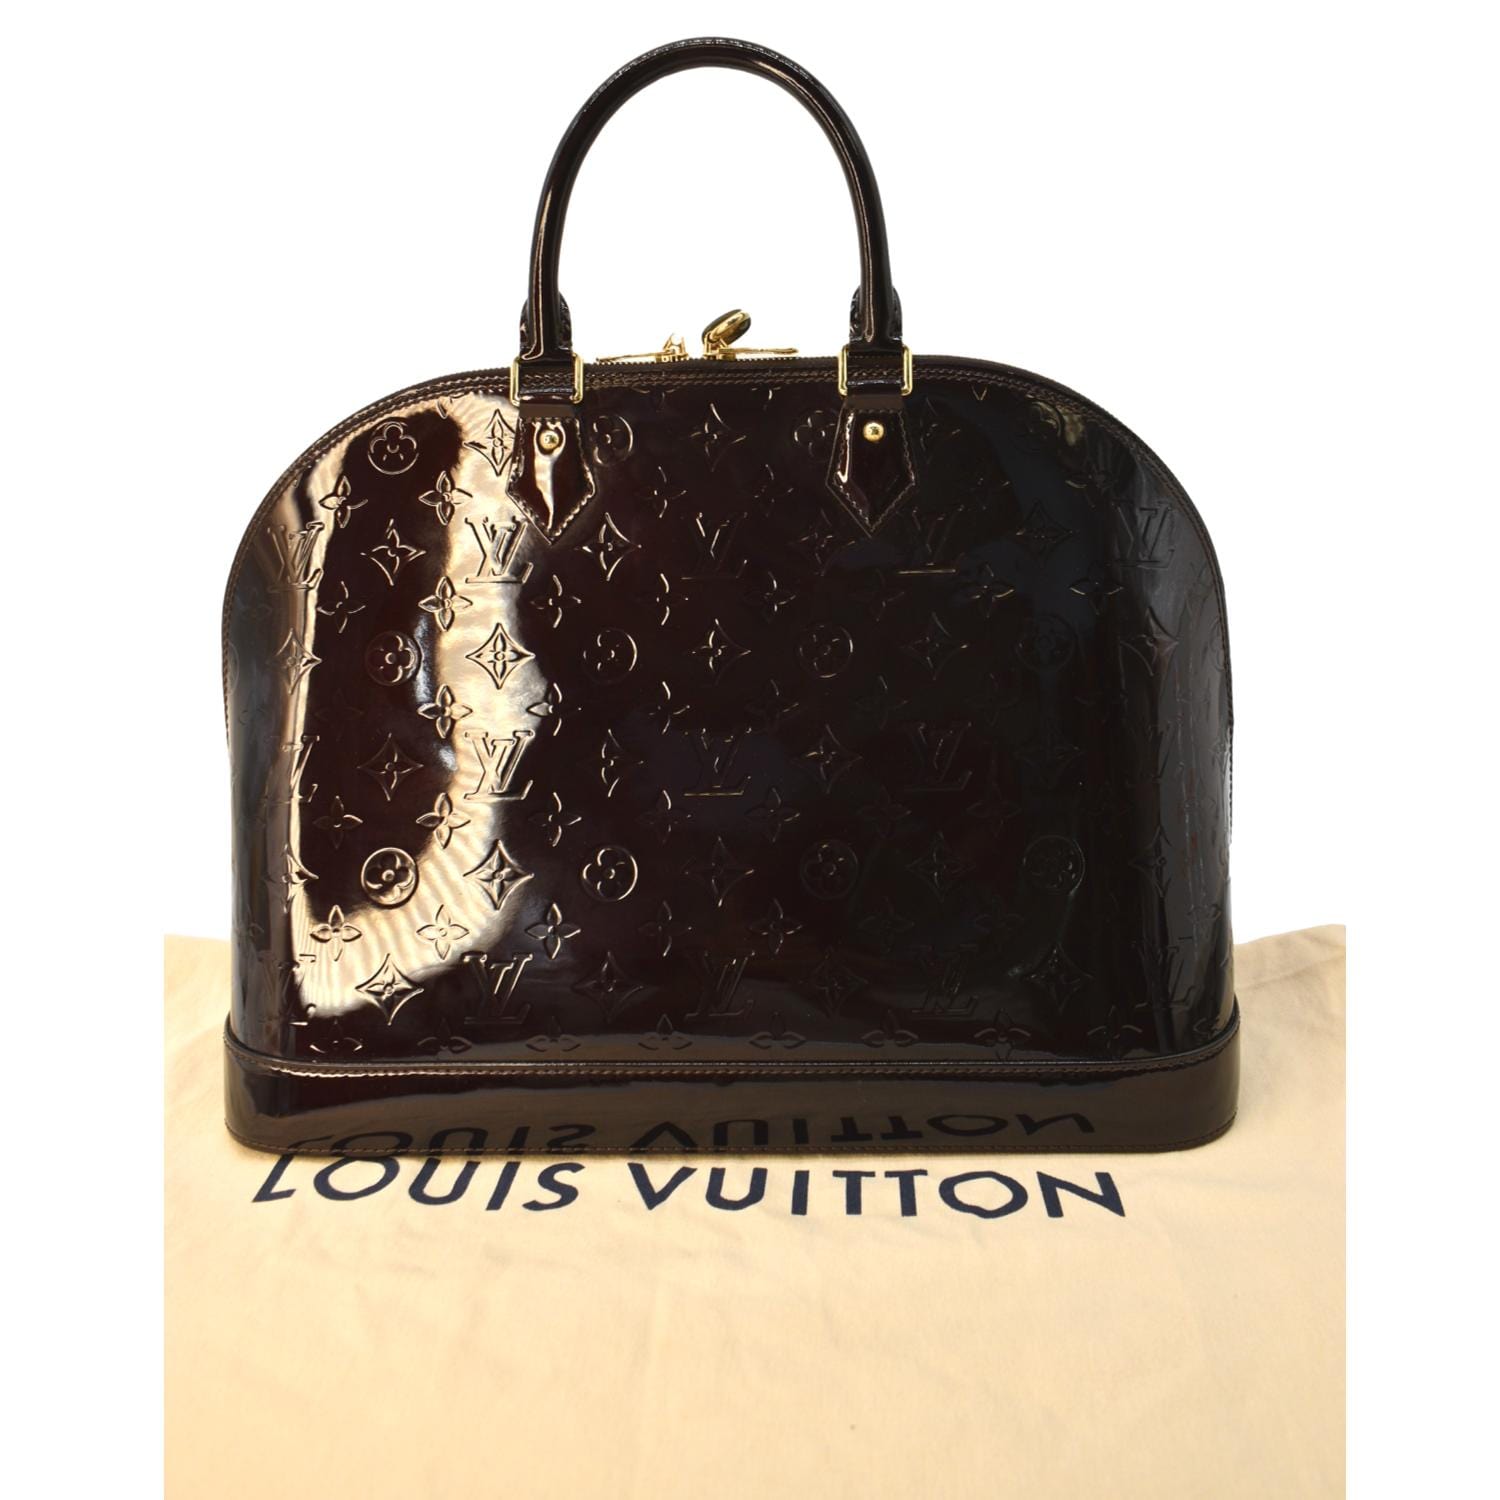 Sold at Auction: LOUIS VUITTON, LOUIS VUITTON Sac Alma GM 39 cm en cuir  vernis Monogram amarante